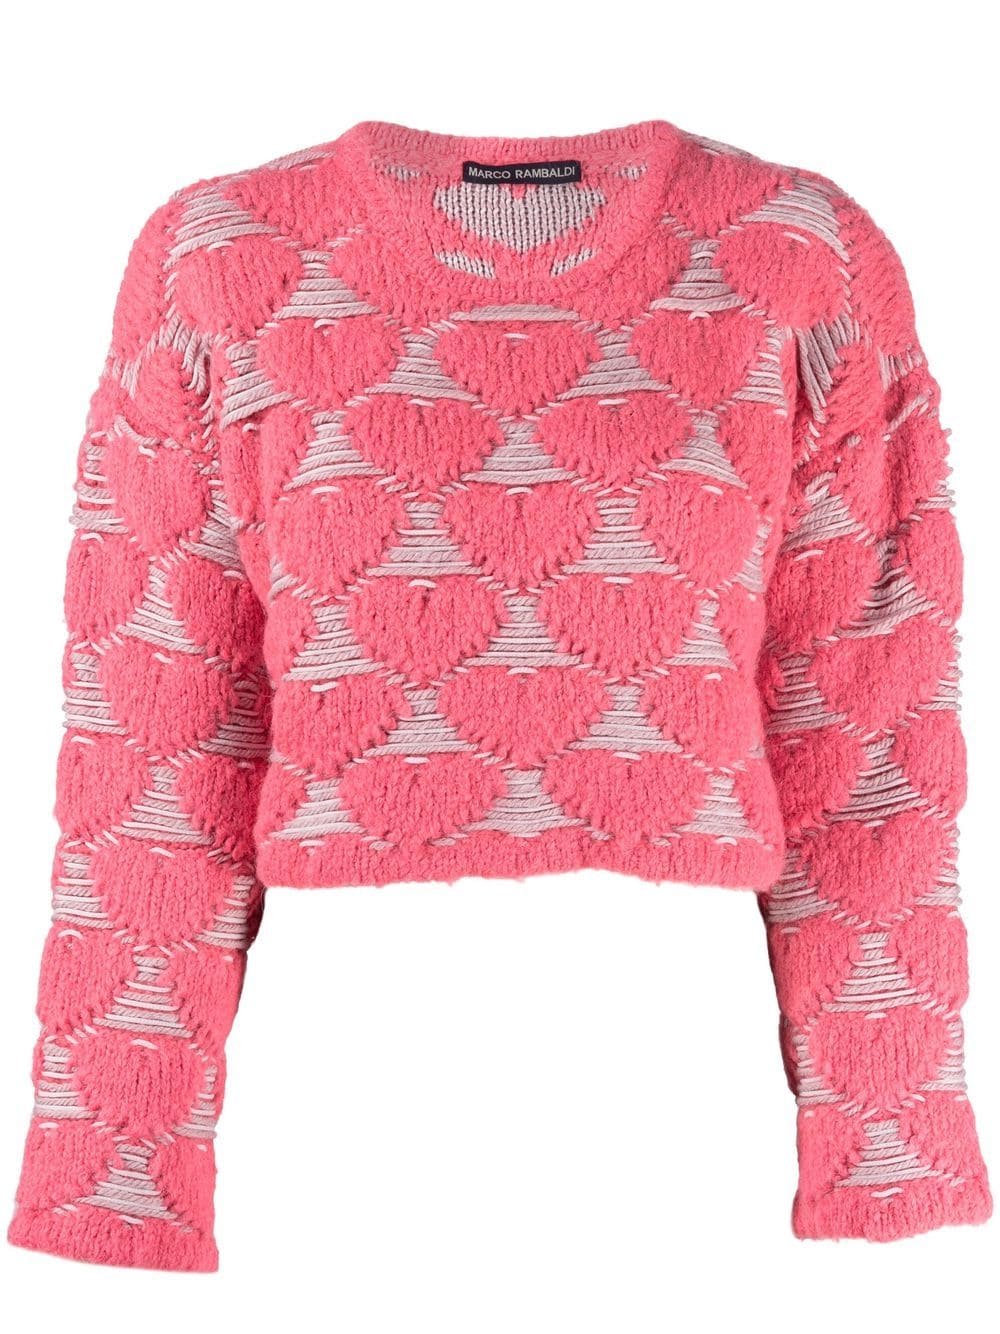 Marco Rambaldi heart-embroidery knit sweater - Pink von Marco Rambaldi